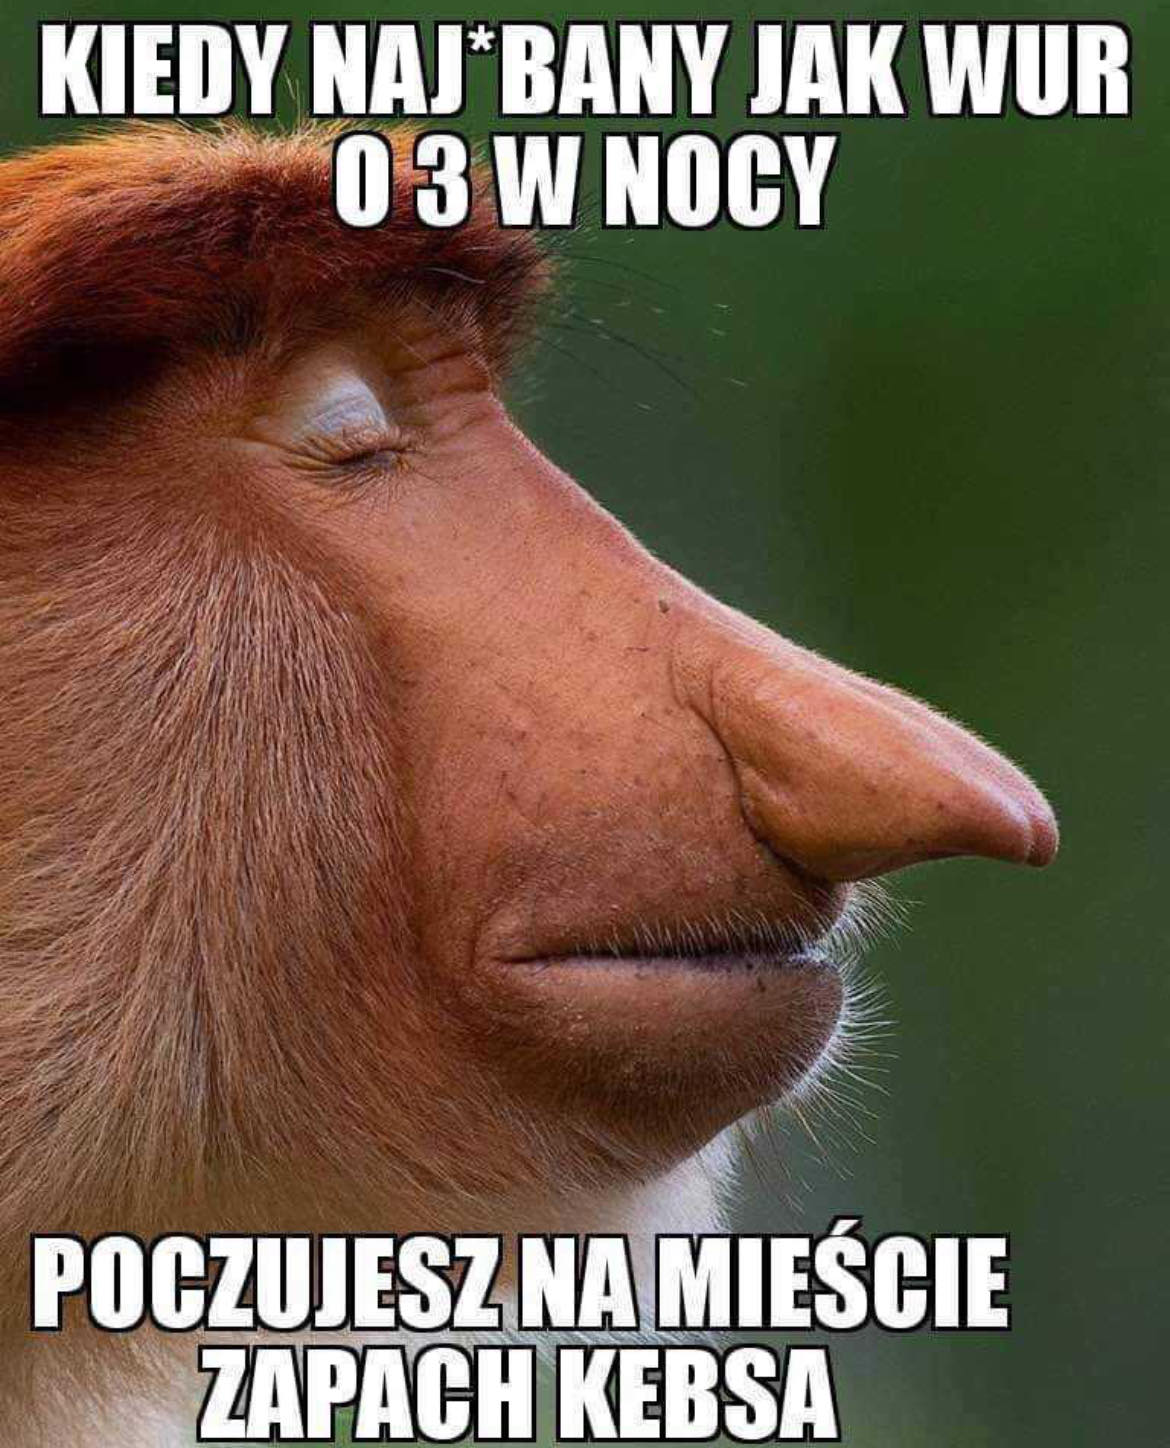 Polish Memes